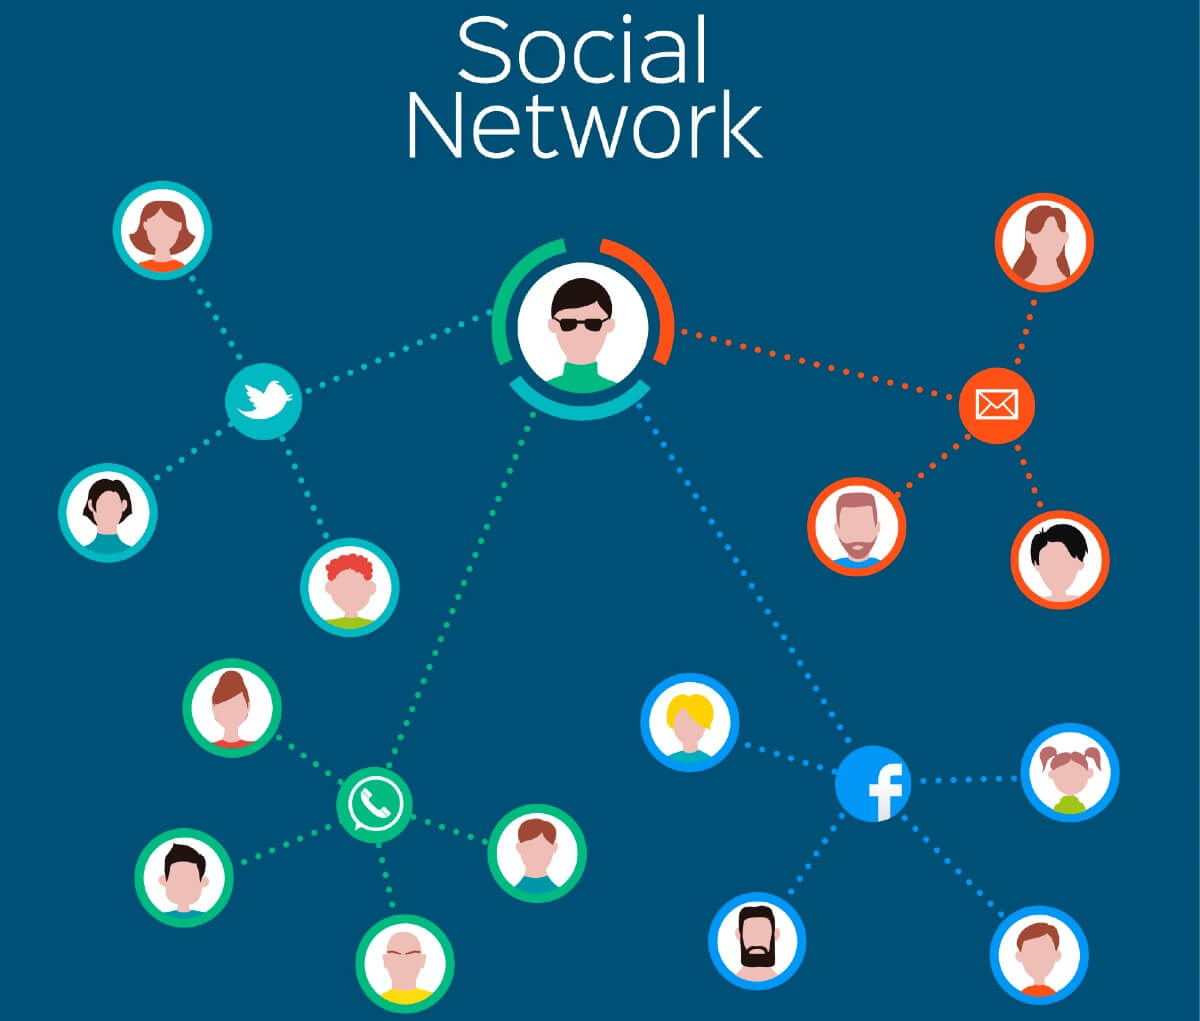 network nas redes sociais para vender seus servicos